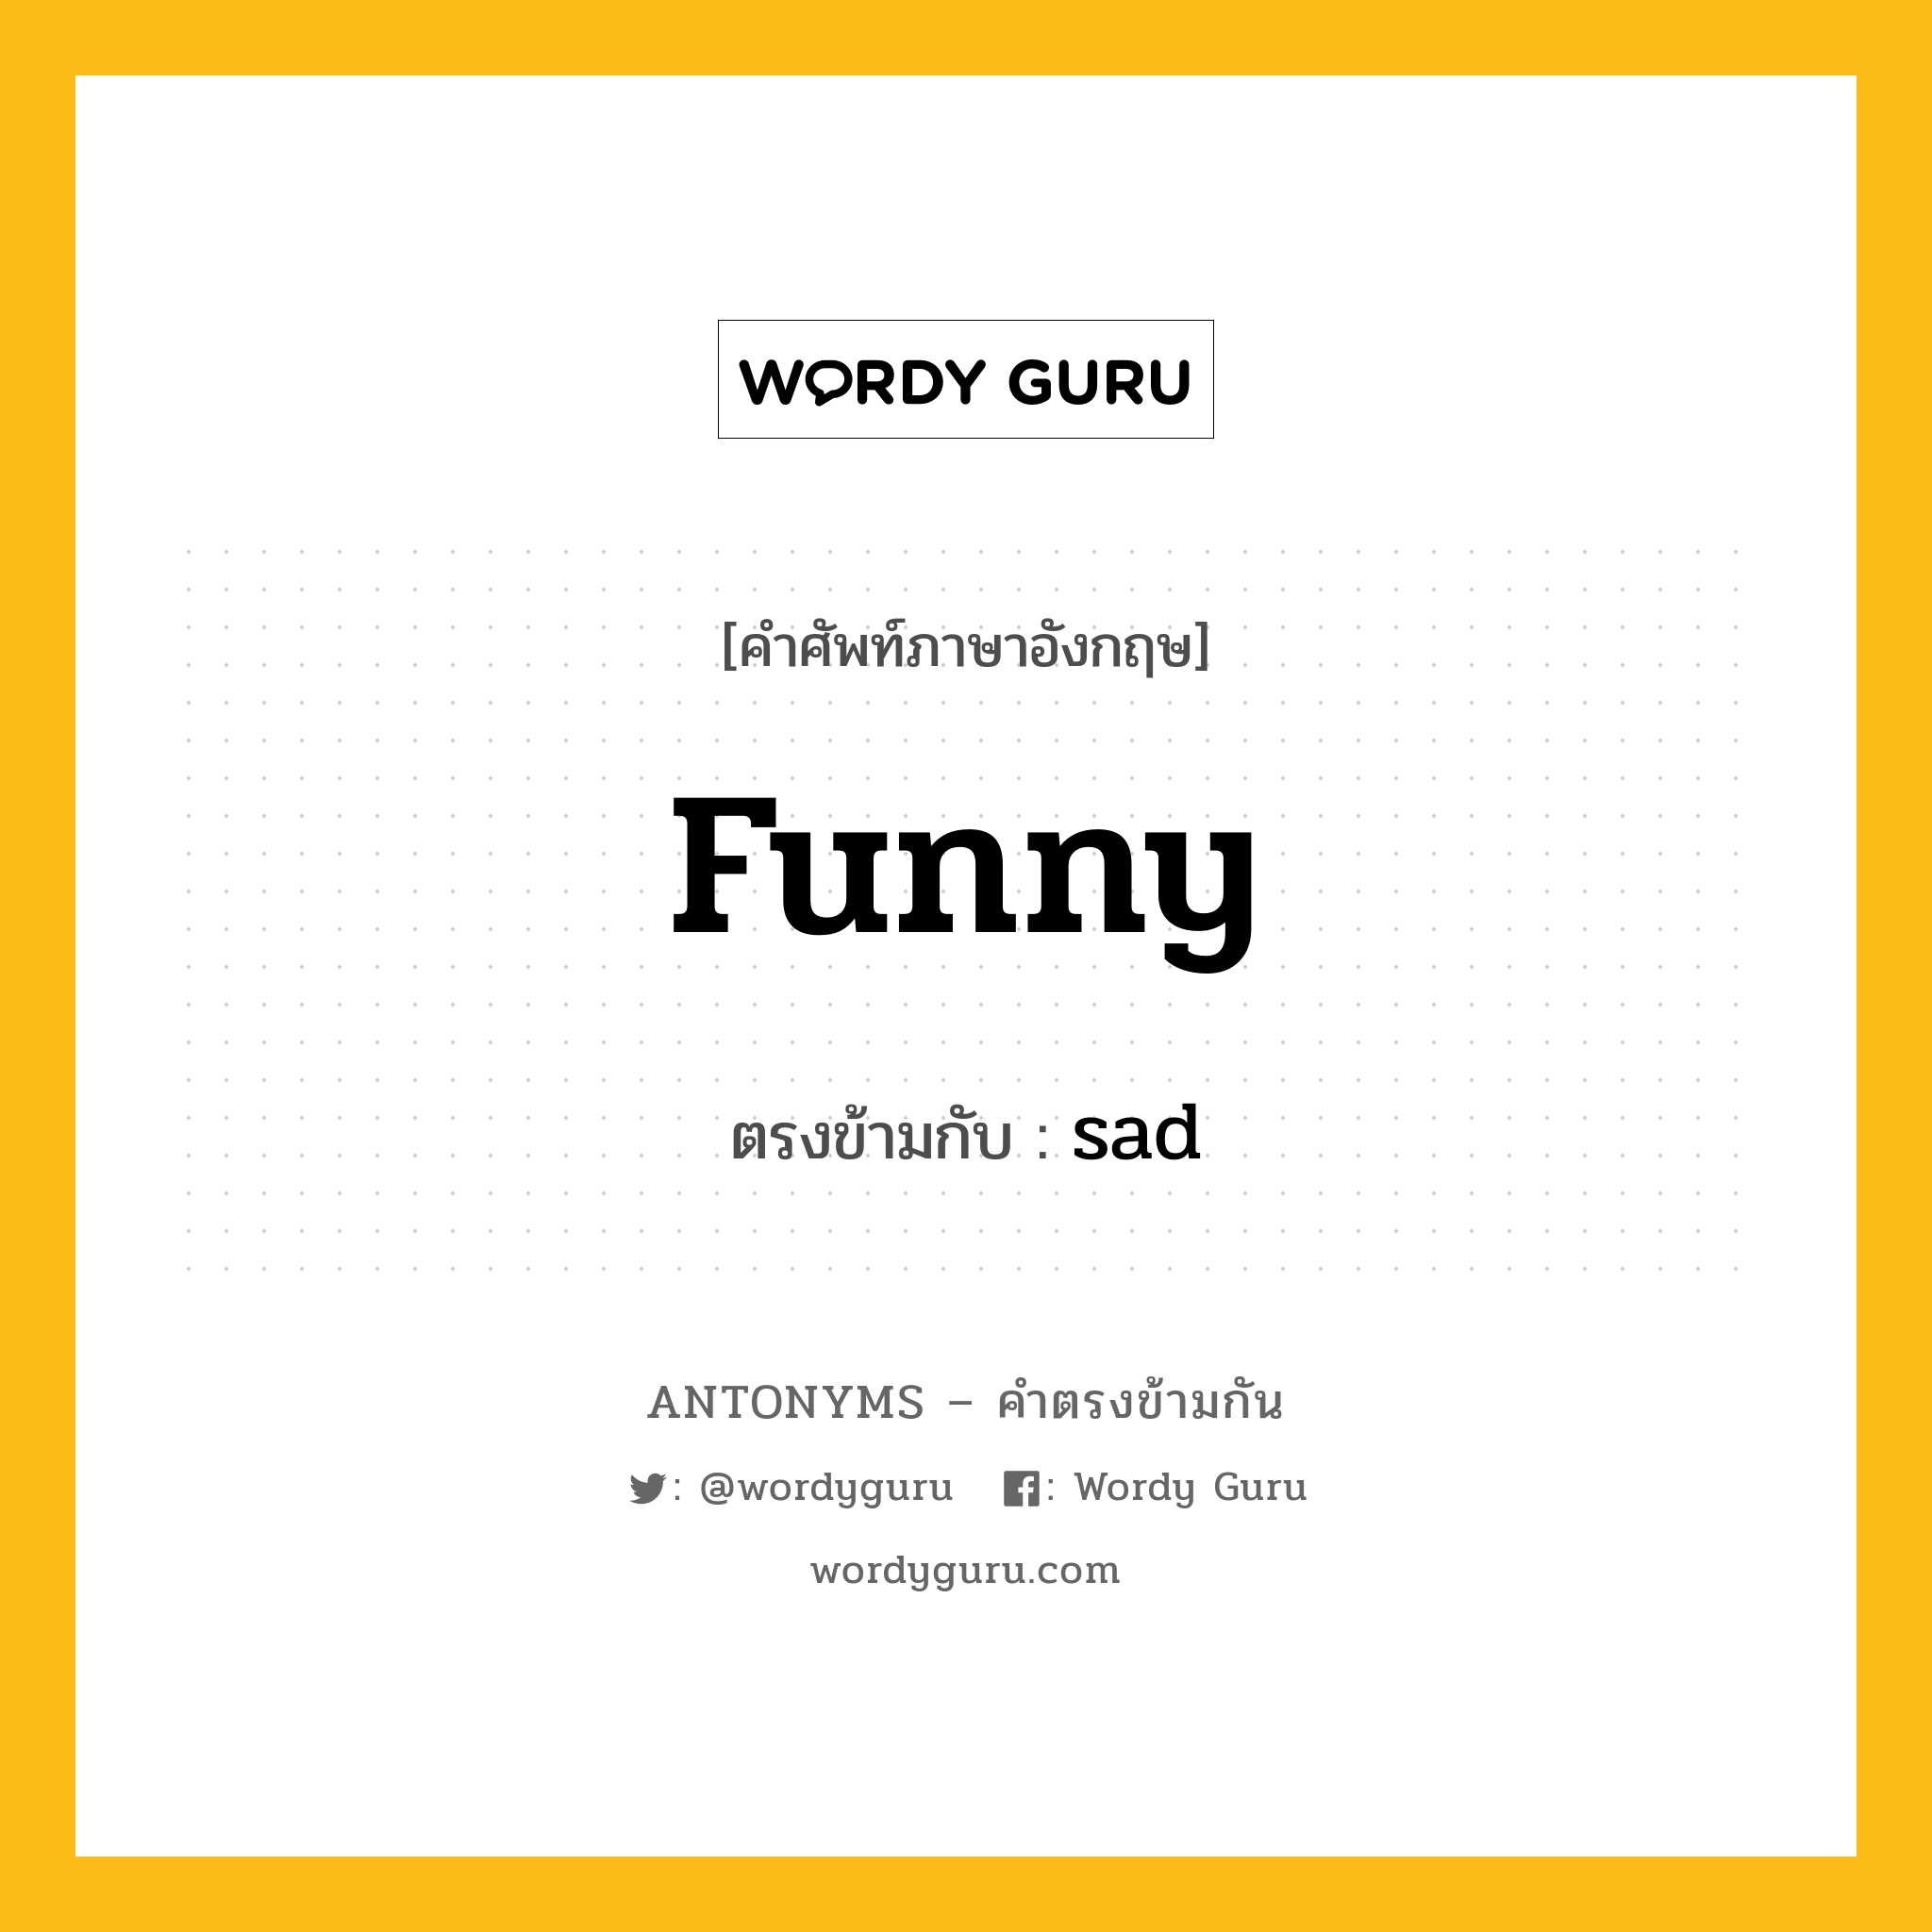 funny เป็นคำตรงข้ามกับคำไหนบ้าง?, คำศัพท์ภาษาอังกฤษที่มีความหมายตรงข้ามกัน funny ตรงข้ามกับ sad หมวด sad